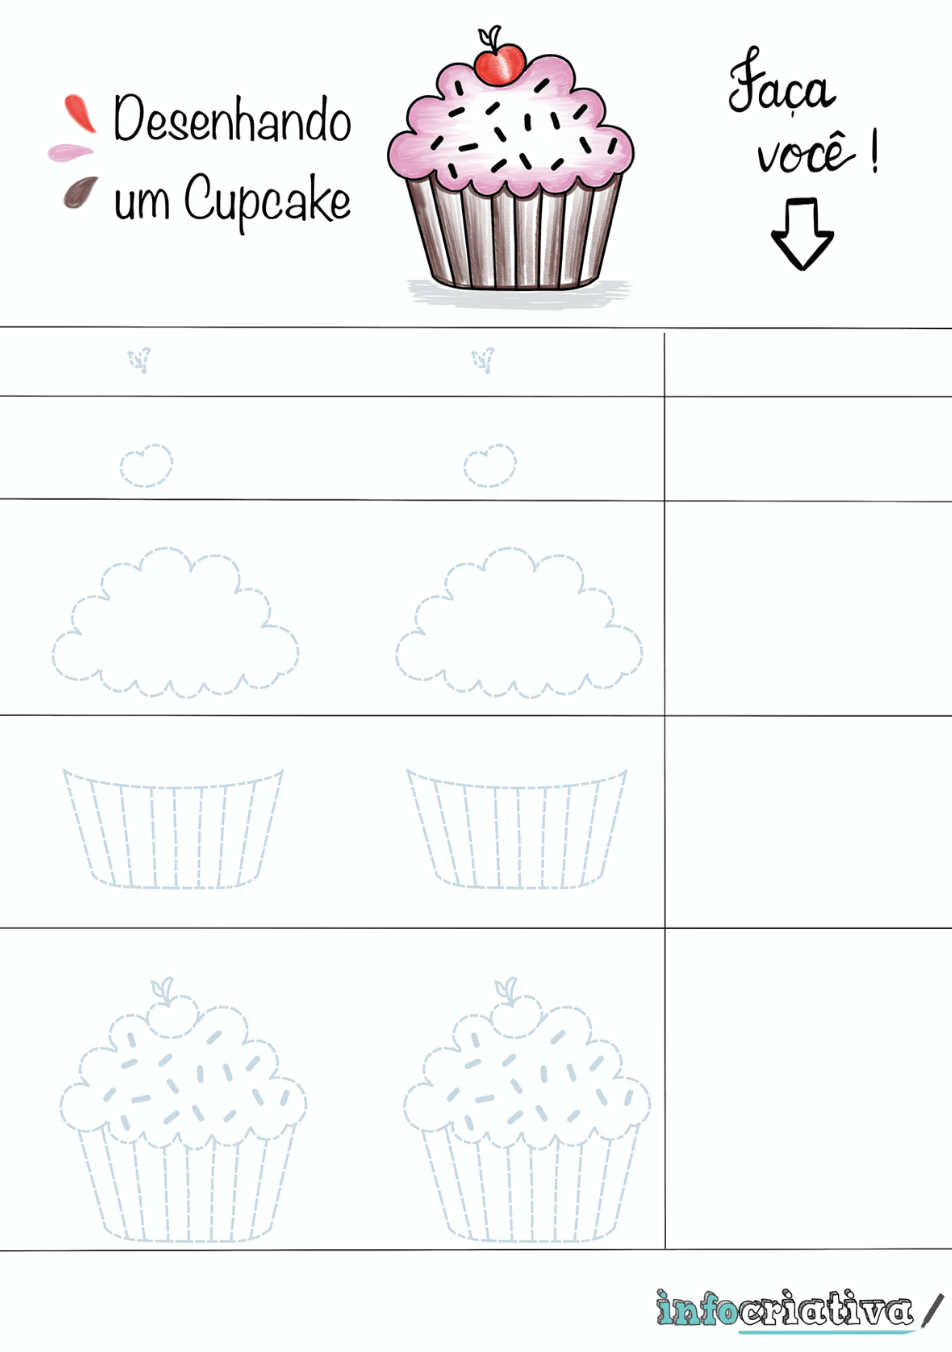 Desenhando um Cupcake